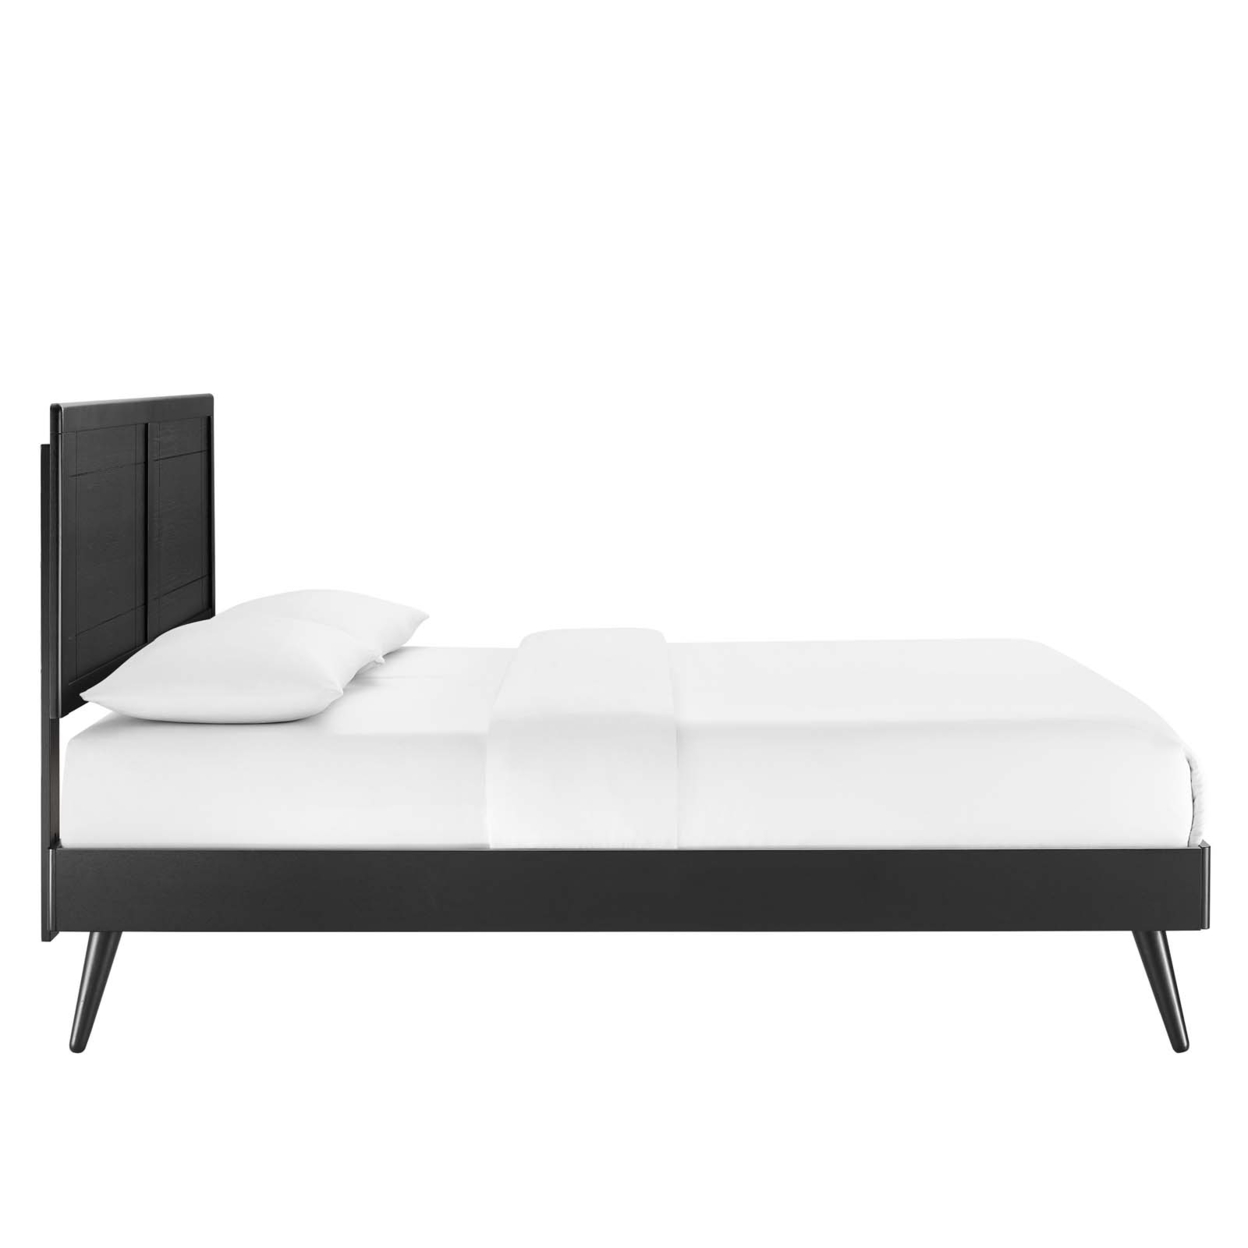 Marlee Full Wood Platform Bed With Splayed Legs, Black